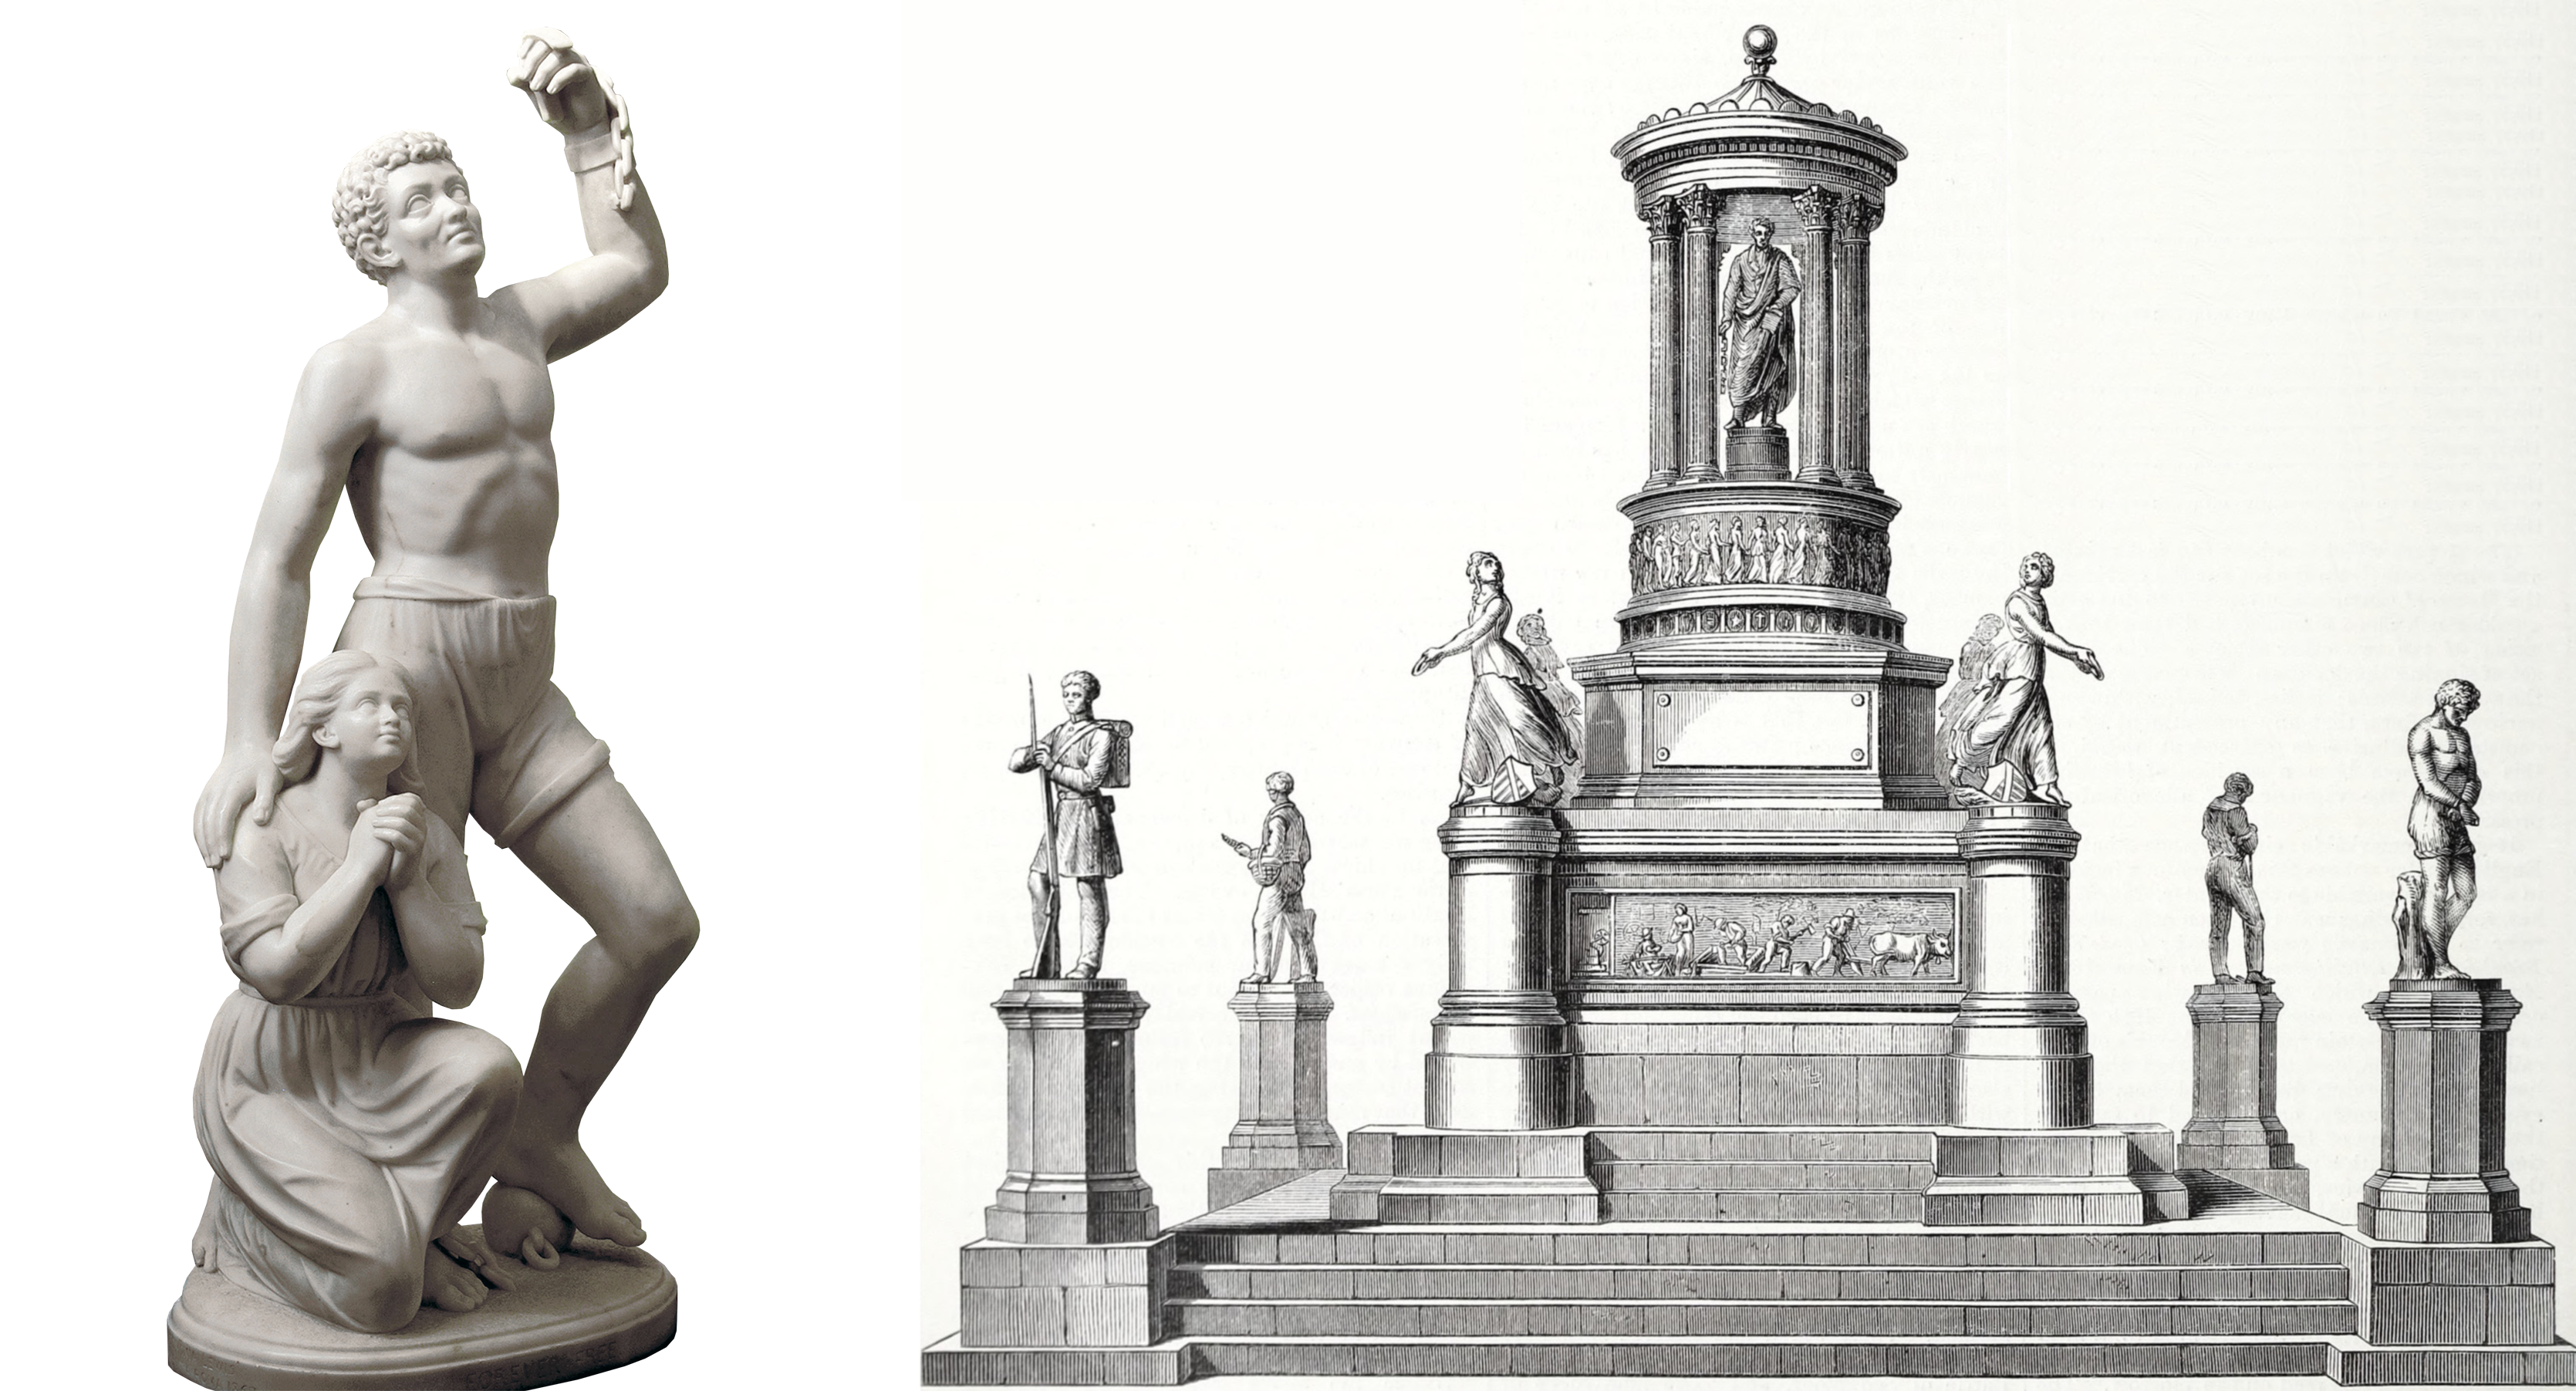 Left: Edmonia Lewis, Forever Free, 1867, marble, 106 cm high (Howard University Gallery of Art); right: Harriet Hosmer, early design for Freedmen’s Memorial to Lincoln, 1868